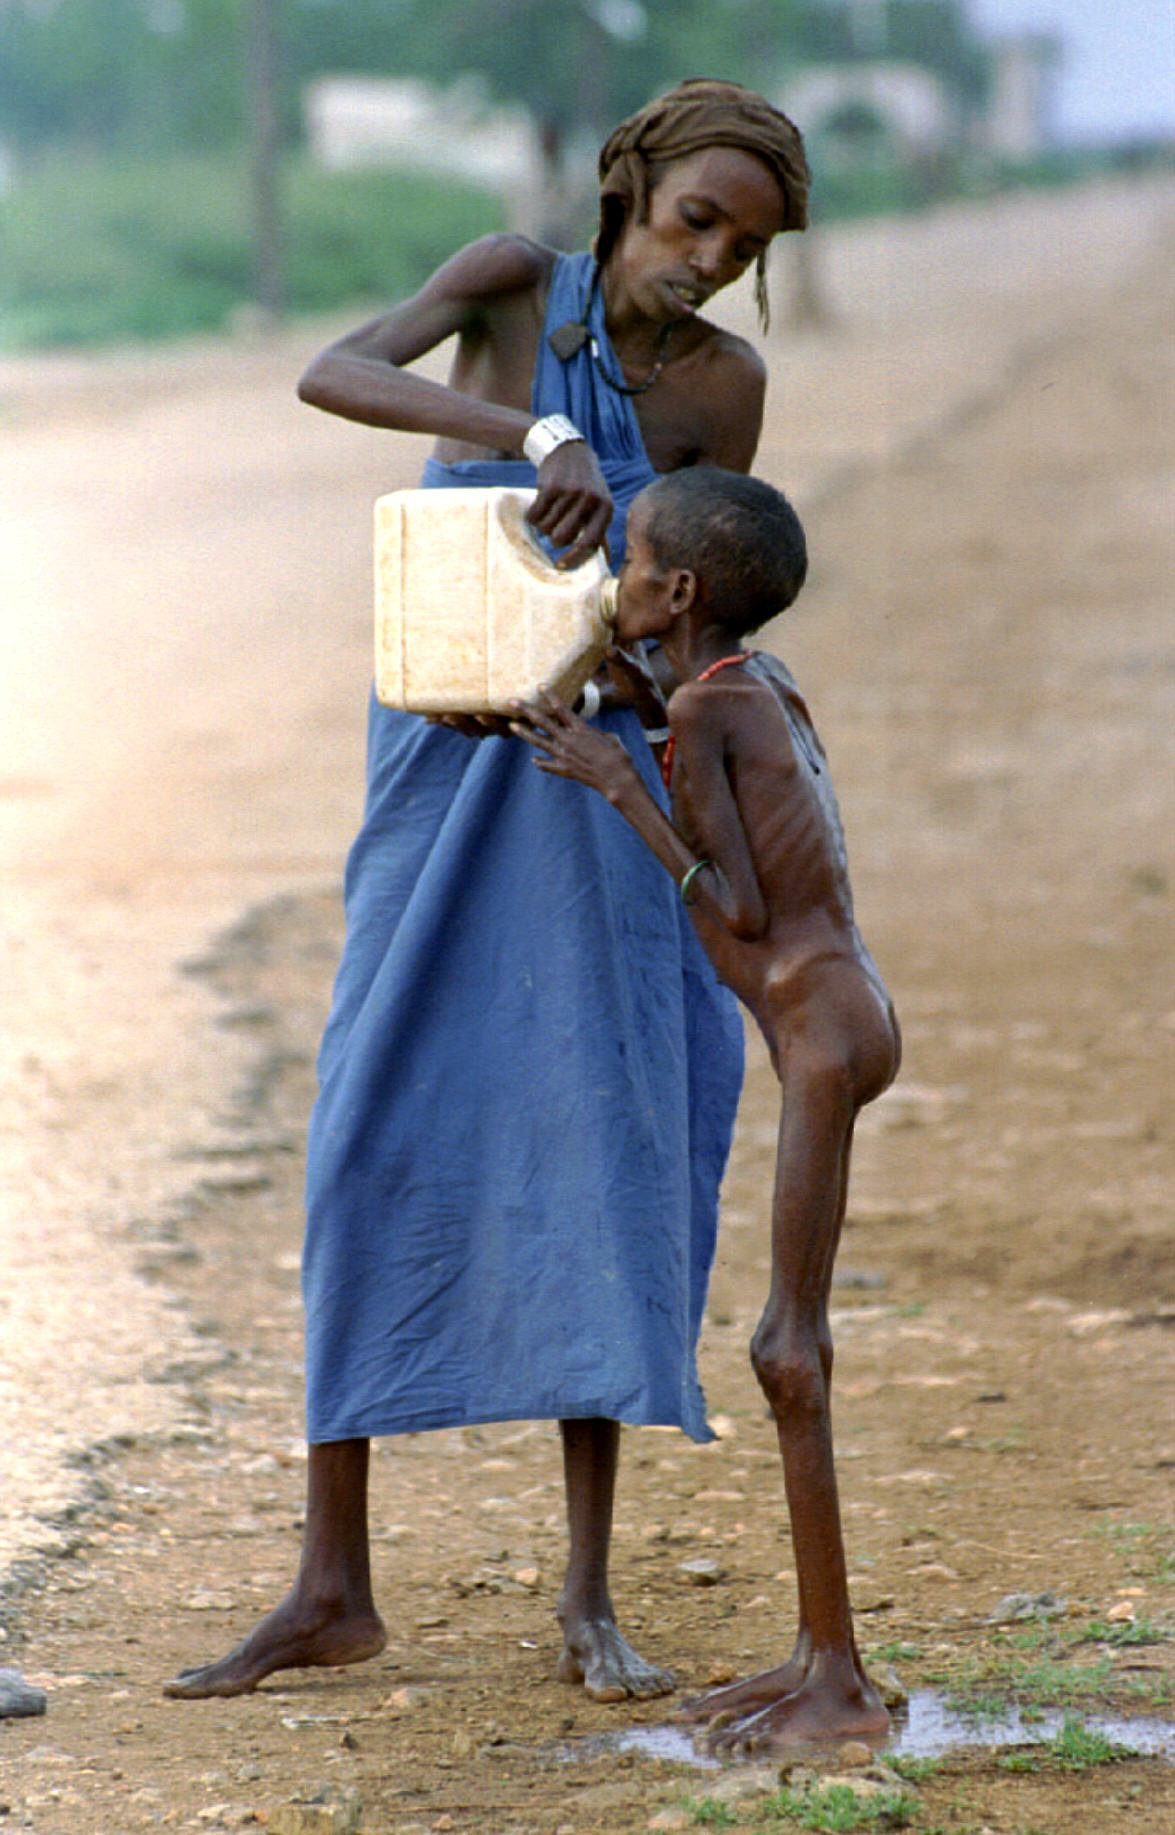 Μια γουλιά νερό για το σκελετωμένο παιδί στη Σομαλία το 1992